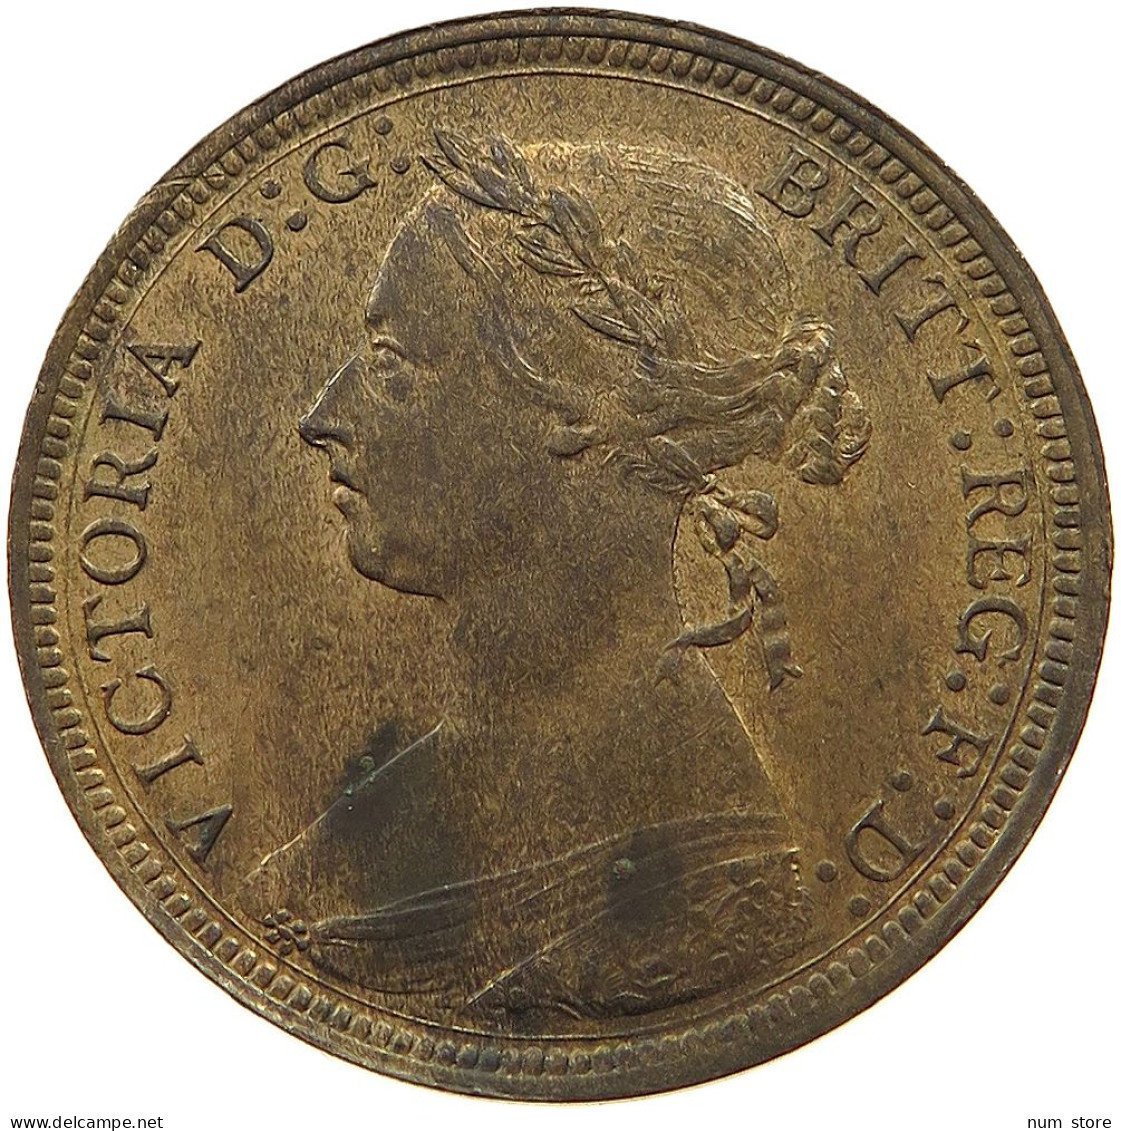 GREAT BRITAIN HALF PENNY 1890 Victoria 1837-1901 #t058 0521 - C. 1/2 Penny